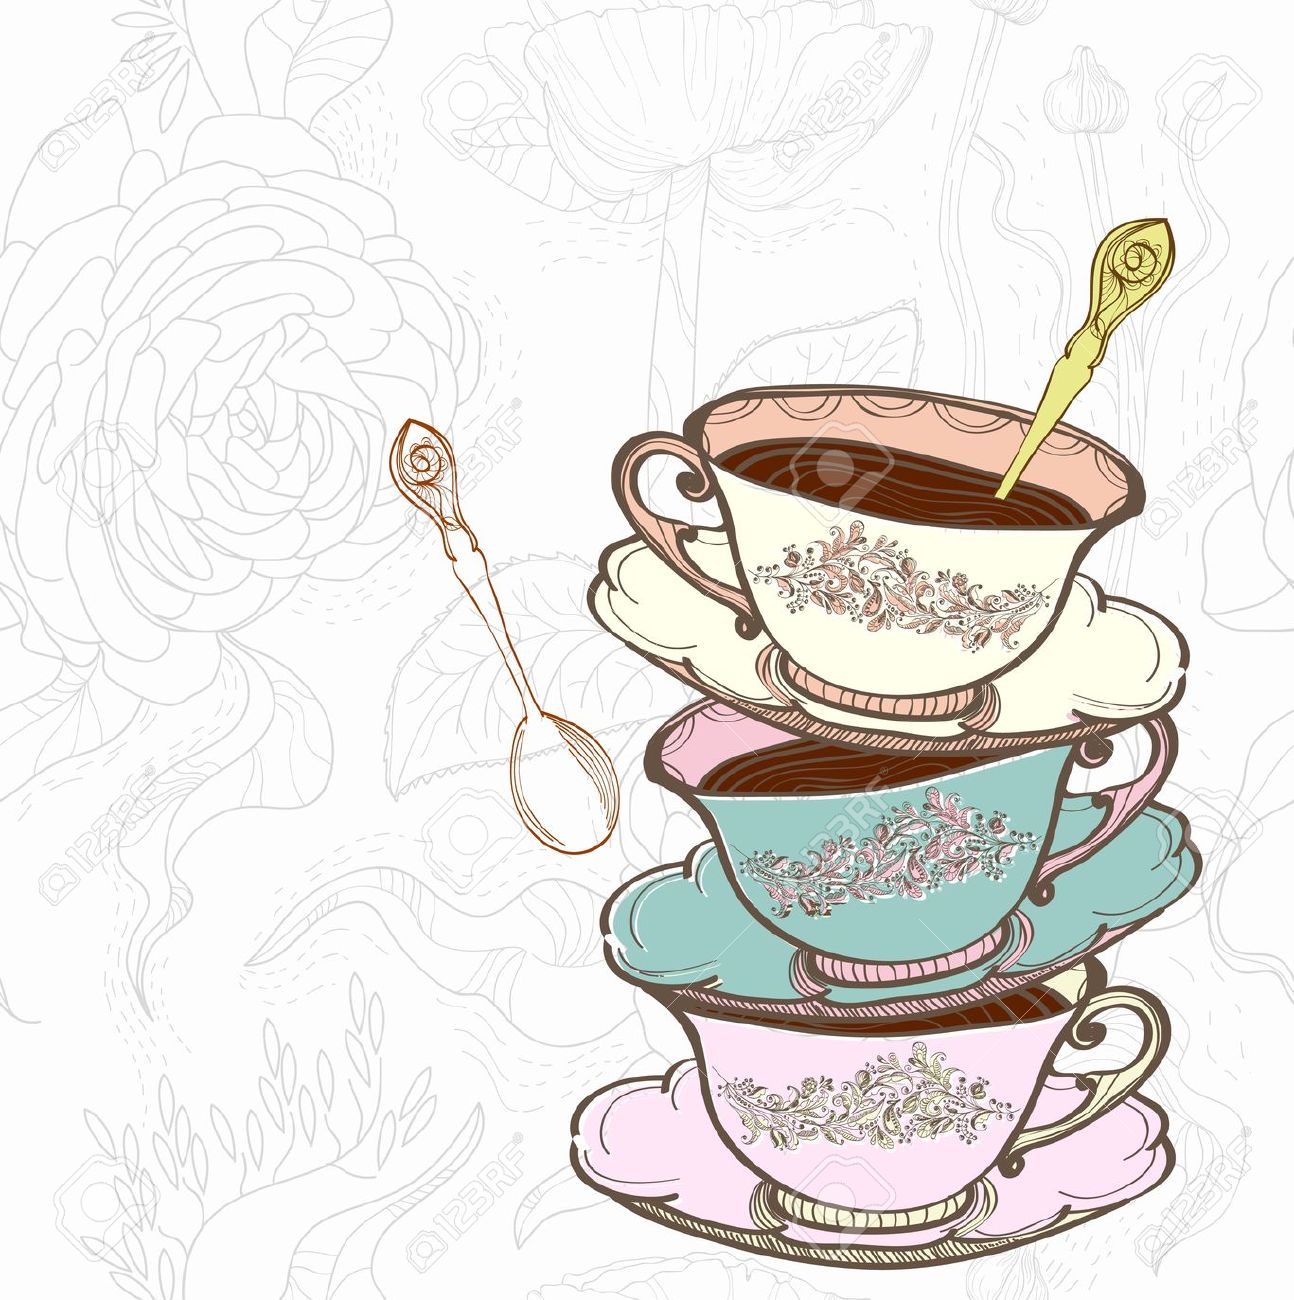 tea party: tea cup background - Tea Party Images Clip Art